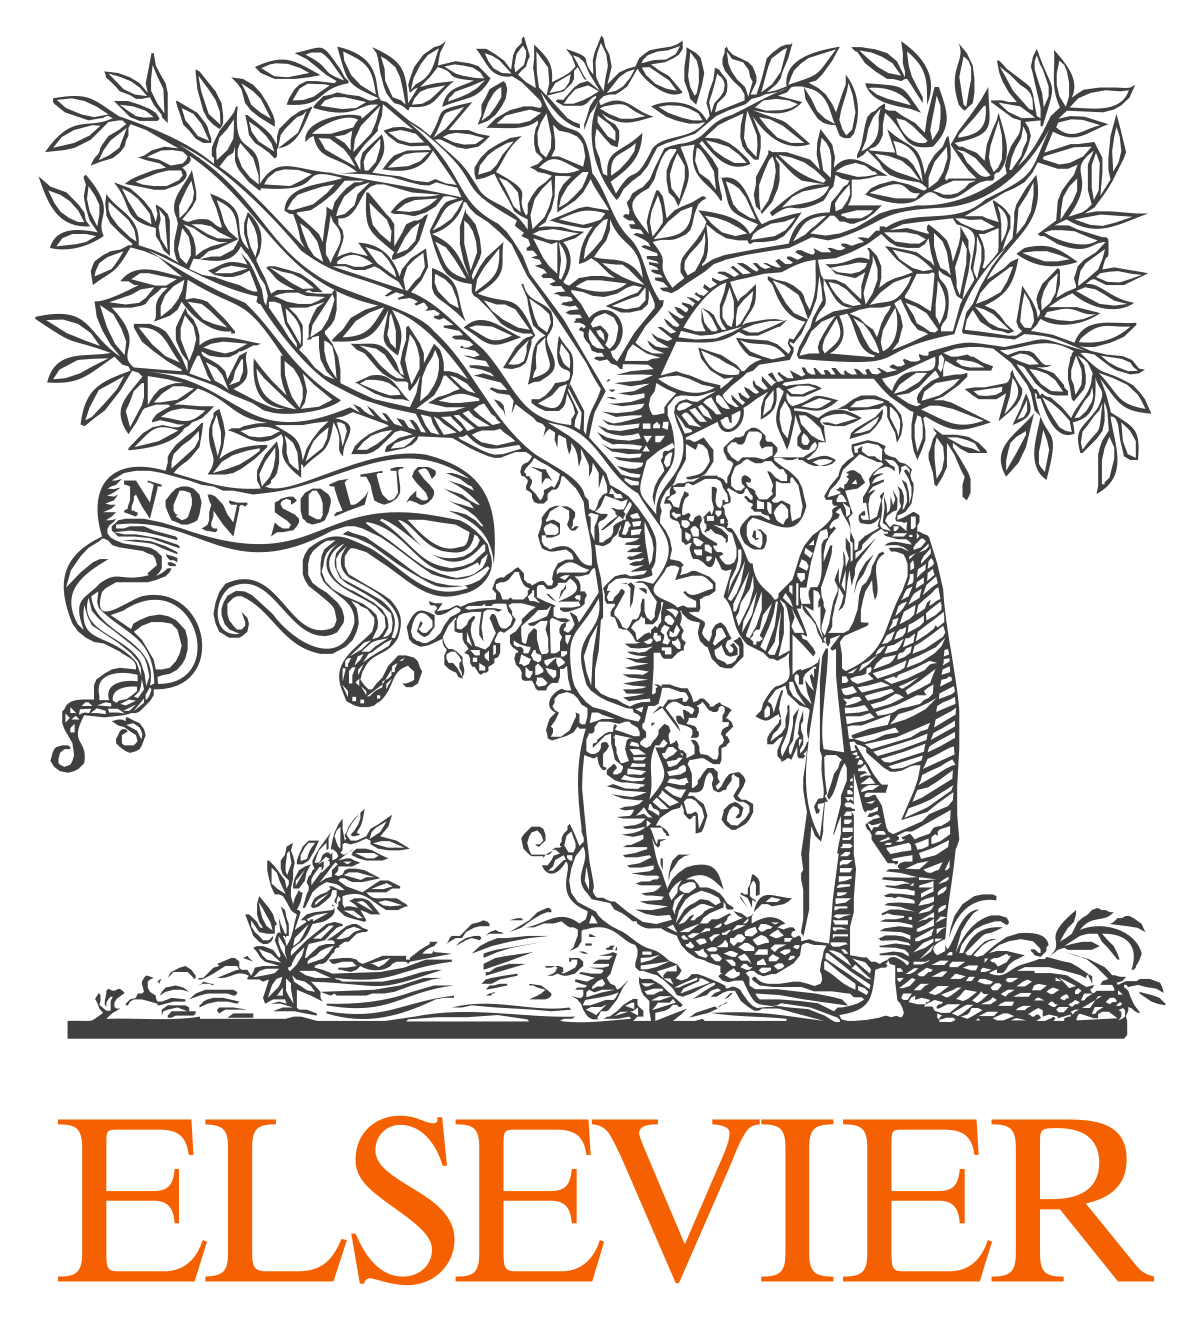 Elsevier (éditeur)